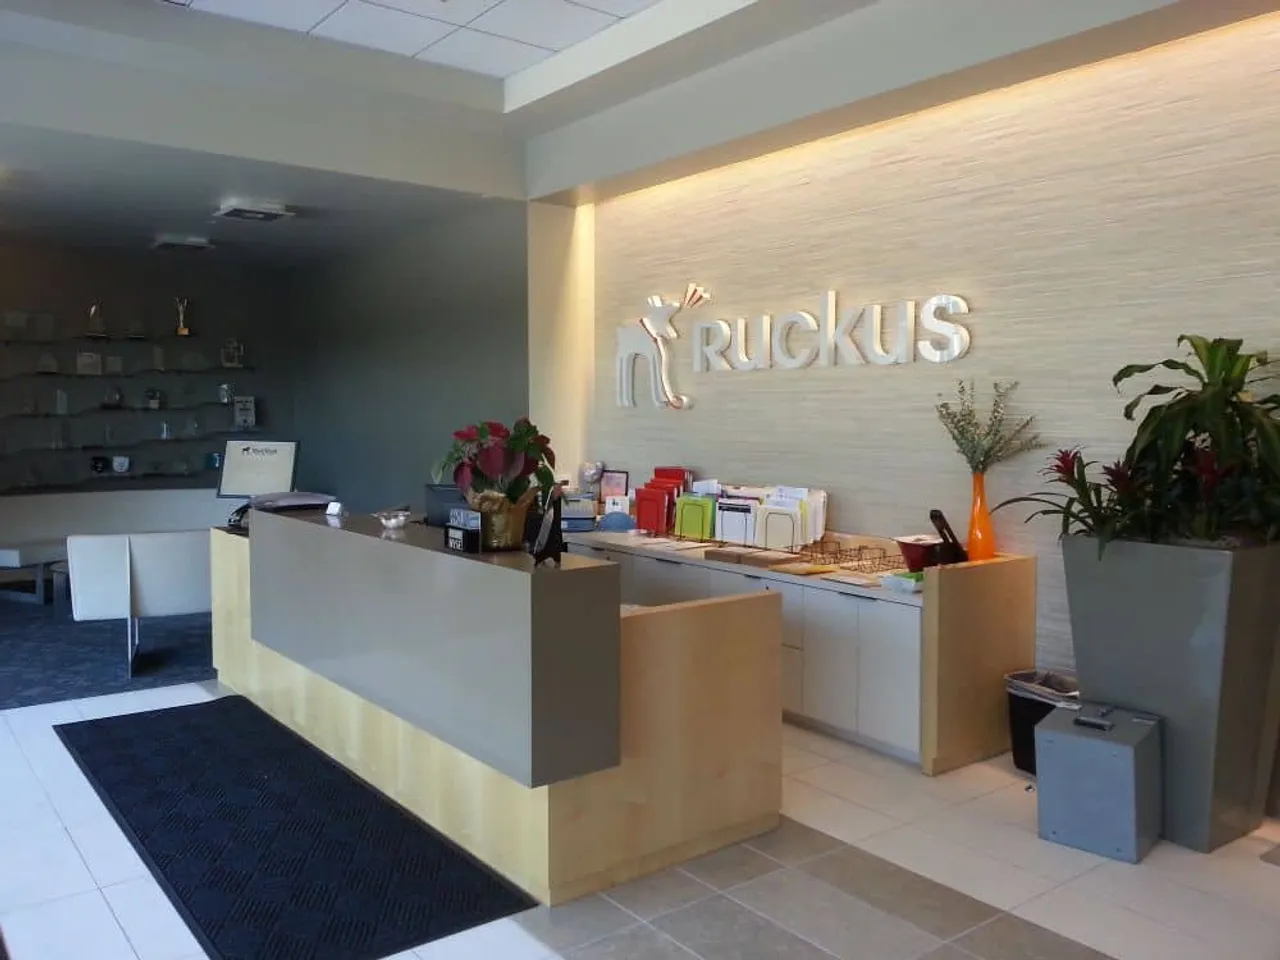 Brazil universities to access Ruckus Wi-Fi